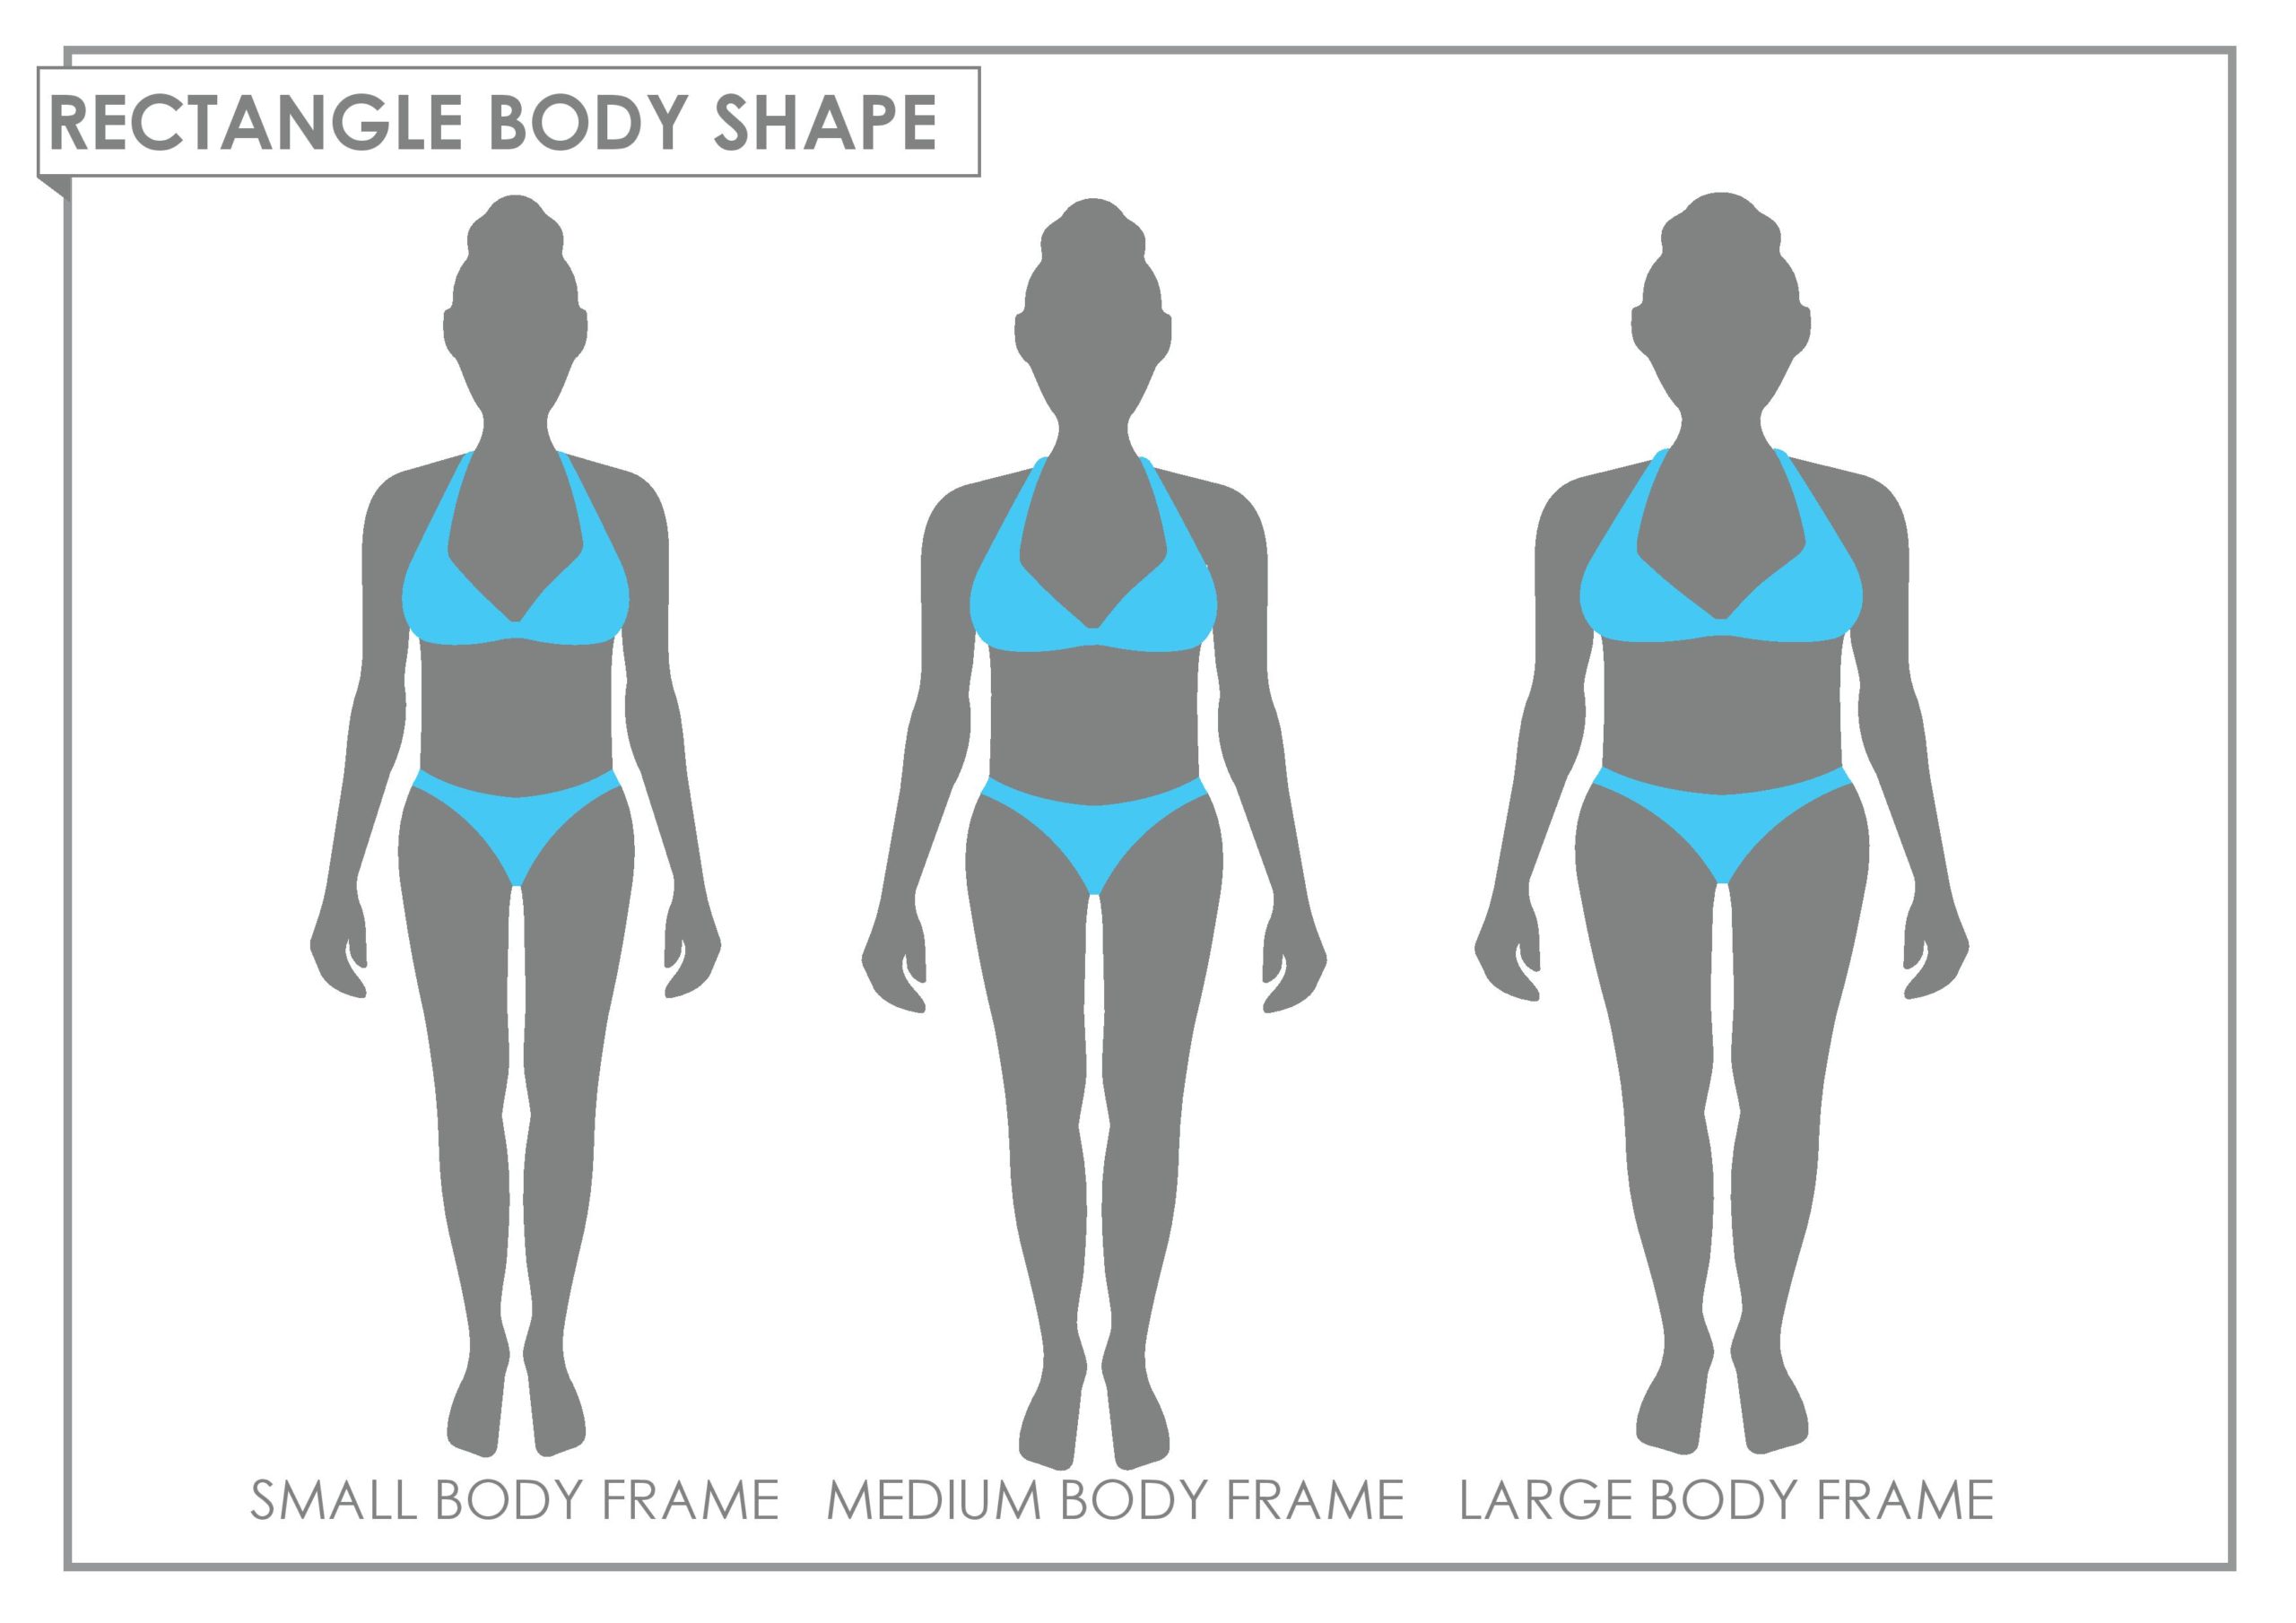 Rectangular Body Shape - Jainee Gandhi